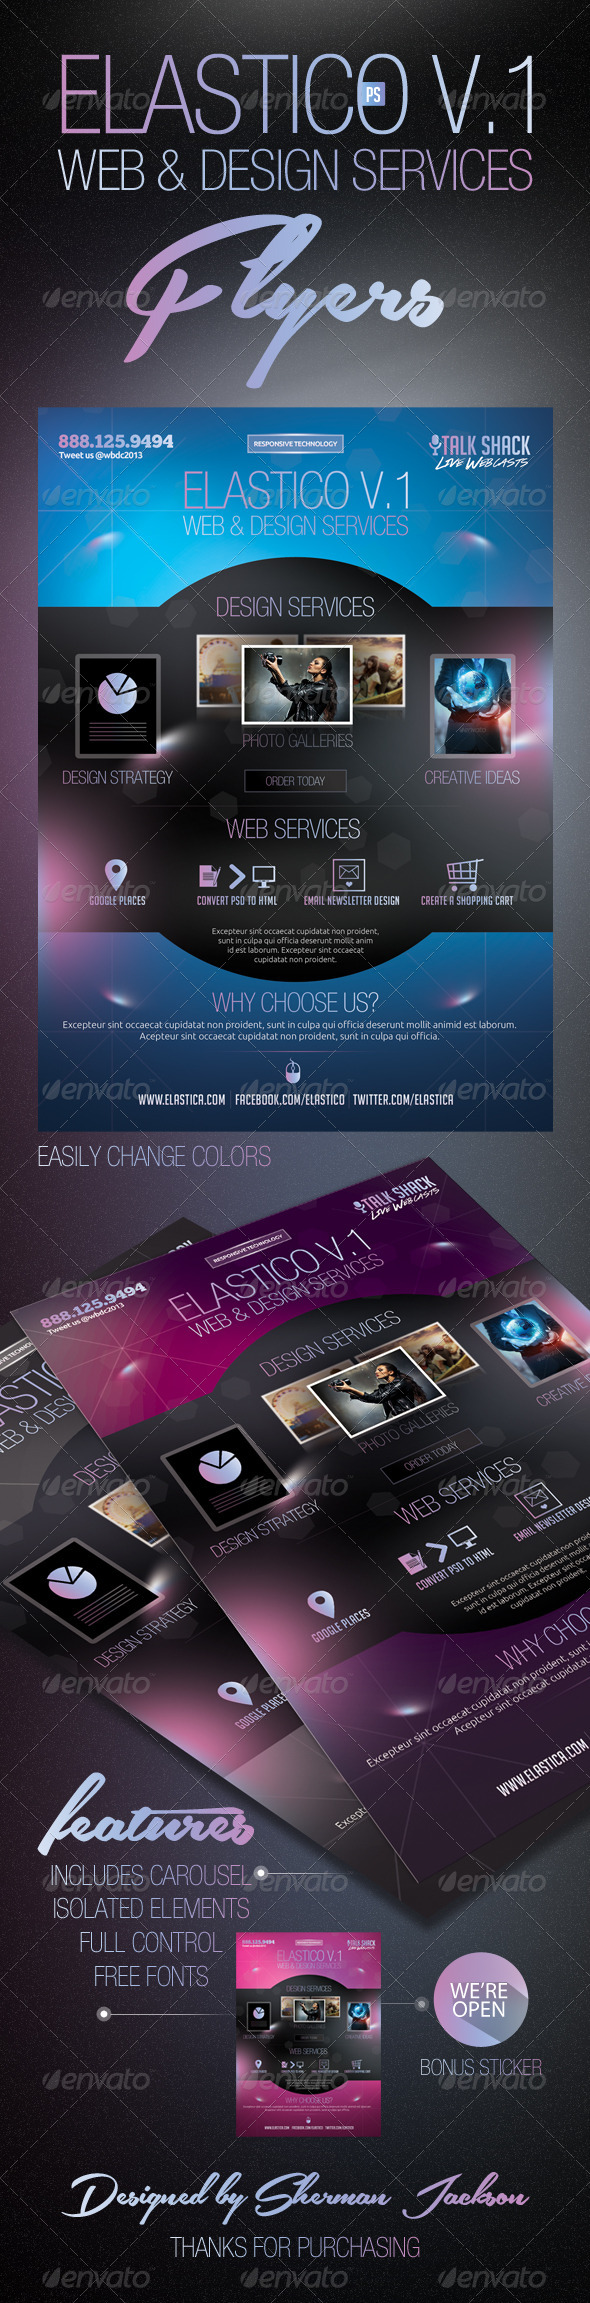 Elastico Web & Design Service Flyer